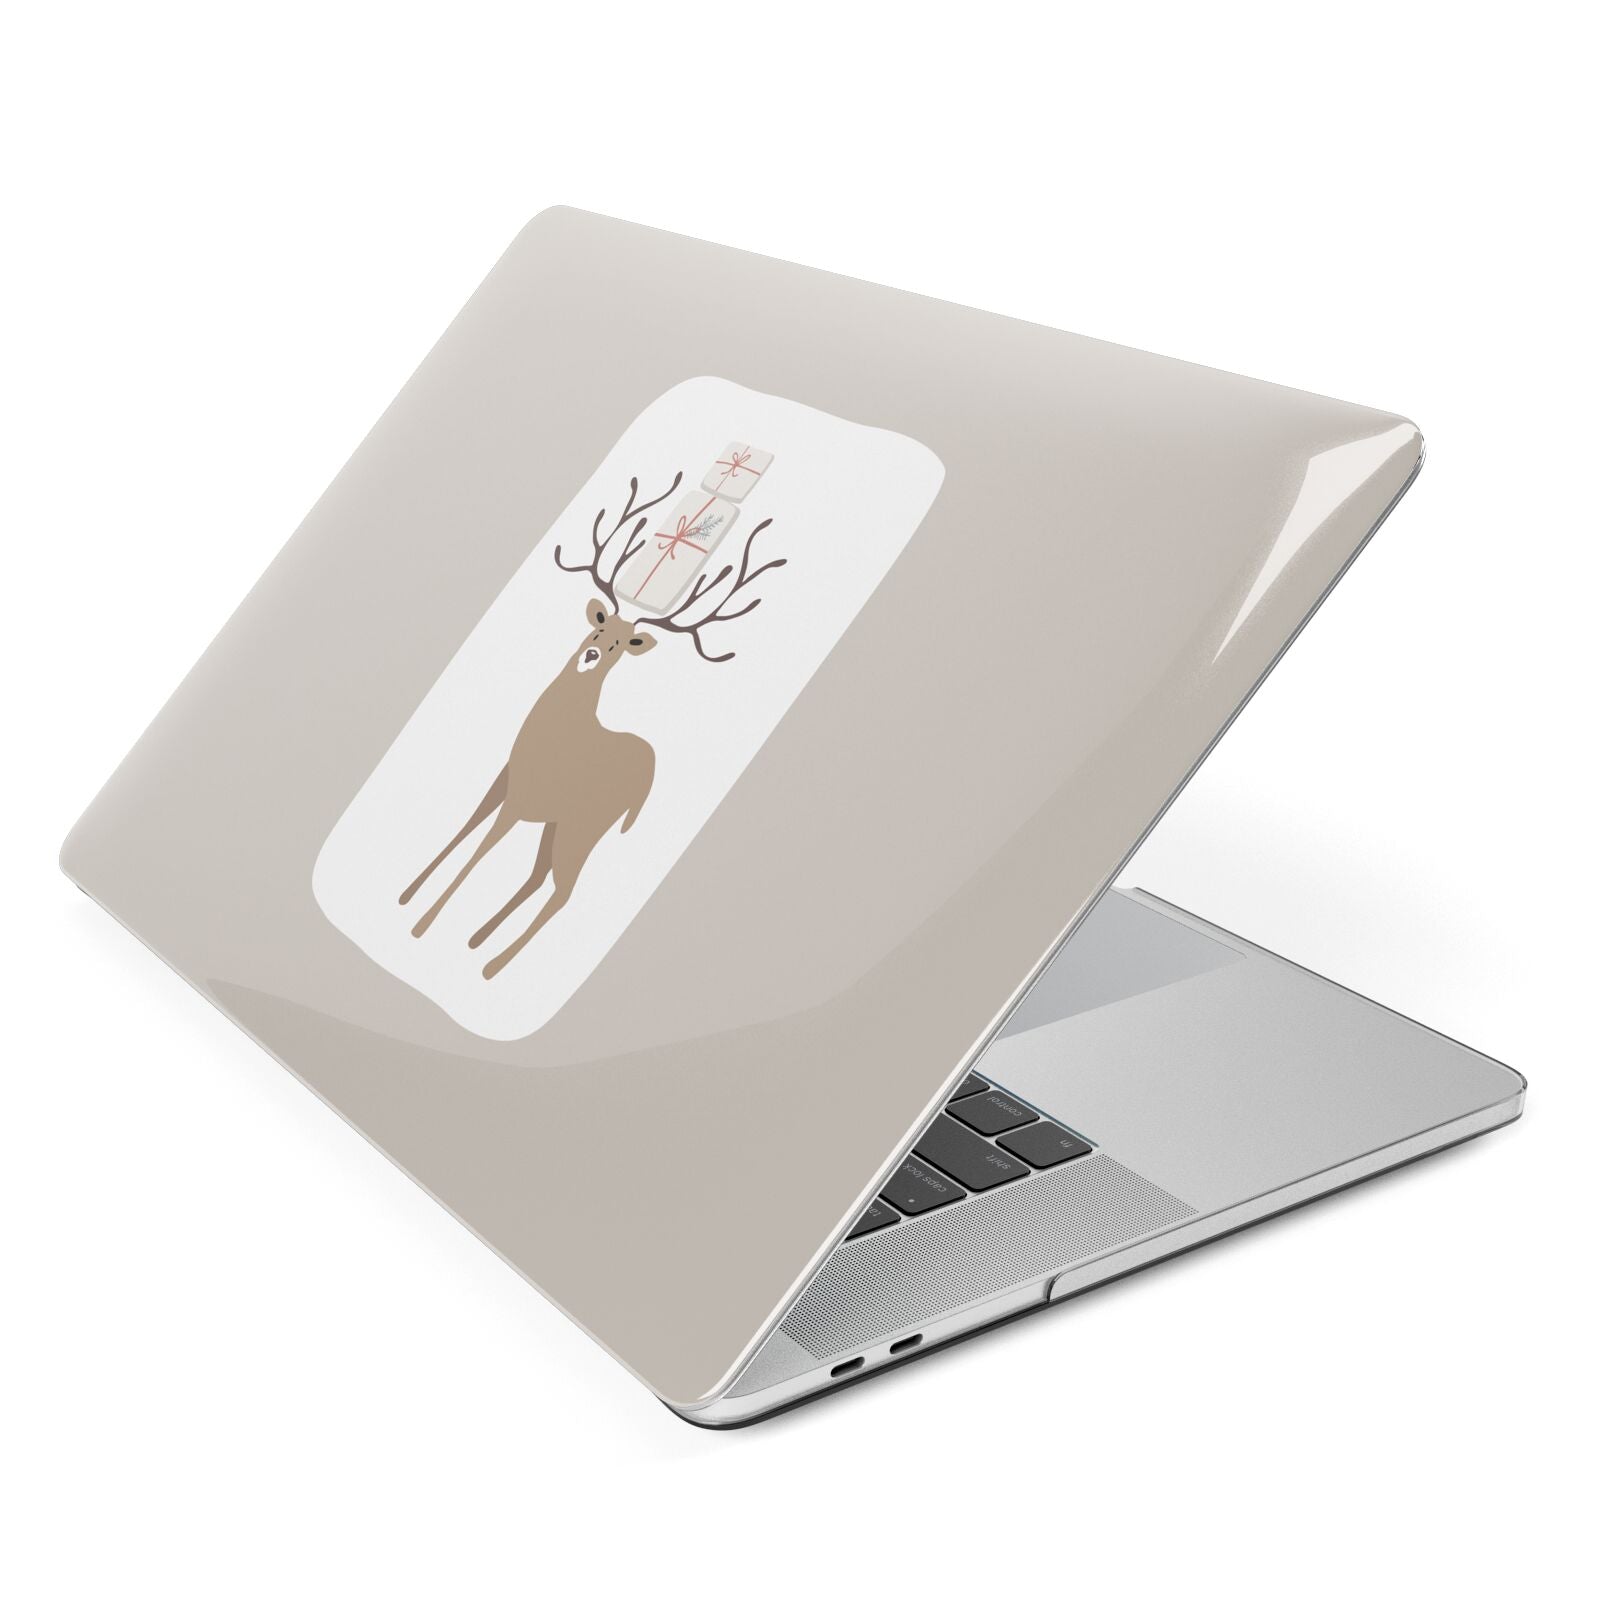 Reindeer Presents Apple MacBook Case Side View